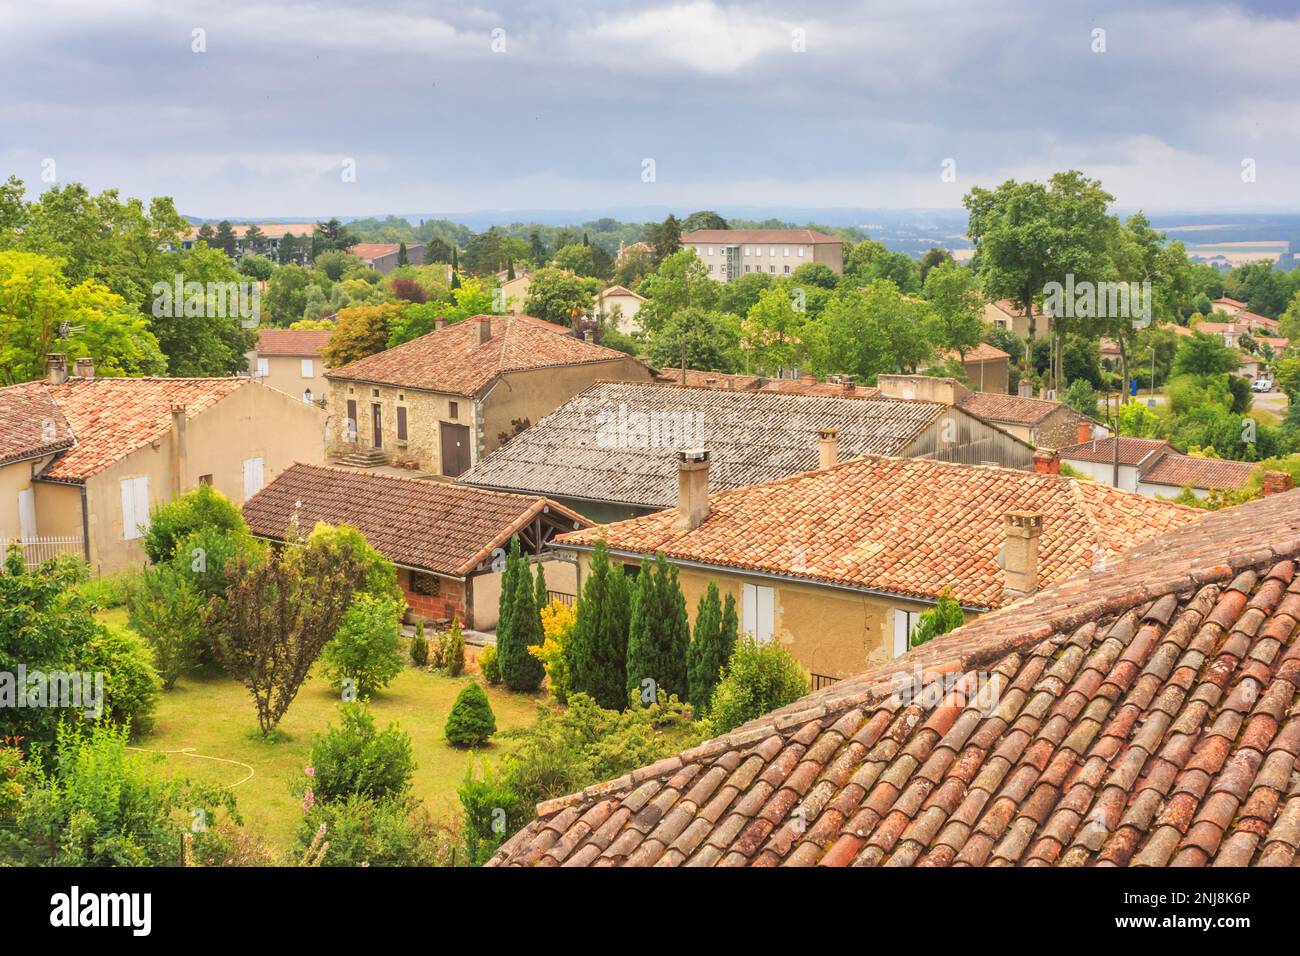 Sommerlandschaft - Blick auf die Dächer von Häusern in einer französischen Provinzstadt in der historischen Provinz Gascony, Frankreich Stockfoto